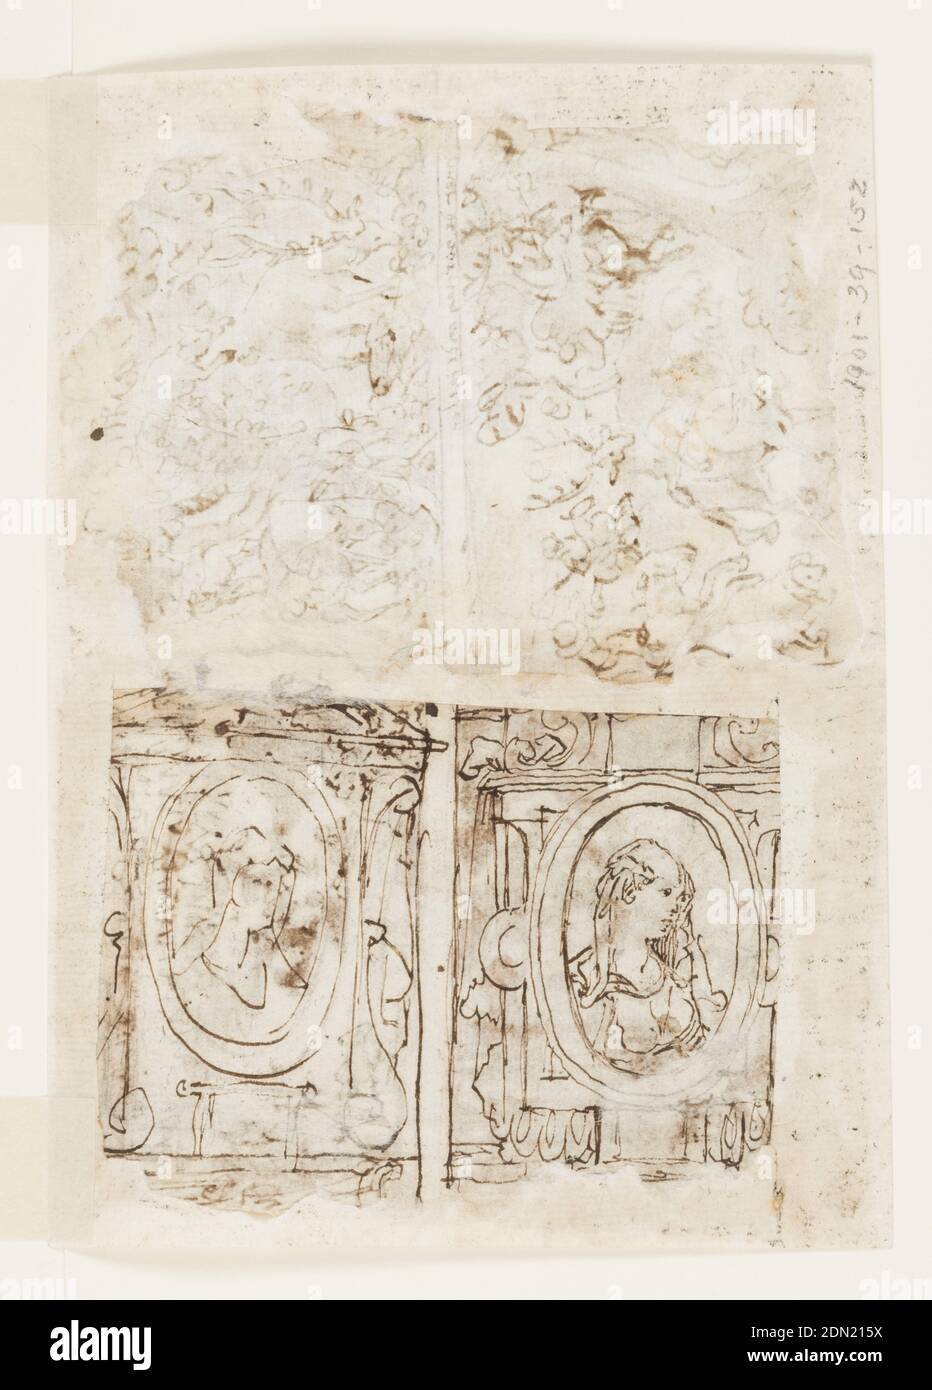 Recto, ci-dessus à gauche: Cerf attaqué par un Lynx; ci-dessus à droite: Cloelia et ses compagnons échappent au camp de Porsena; ci-dessous à droite: Chasse aux femmes; ci-dessous à gauche: Chasse aux cerfs, avec un cerf cachant son cent. Verso: Deux bustes de femmes dans les décors architecturaux, les conceptions préliminaires pour la série d'impression sept vertus, Jan van der Straet, appelé Stradanus, flamand, 1523–1605, encre de plume et marron, pinceau et laver sur deux feuilles jointes de papier cousu, Recto, en haut à gauche: Scène forestière, avec alimentation de chiffons. Un lynx est en train de sauter d'un arbre à l'arrière d'un des cerfs. Inscription en néerlandais sous la ligne de cadrage Banque D'Images